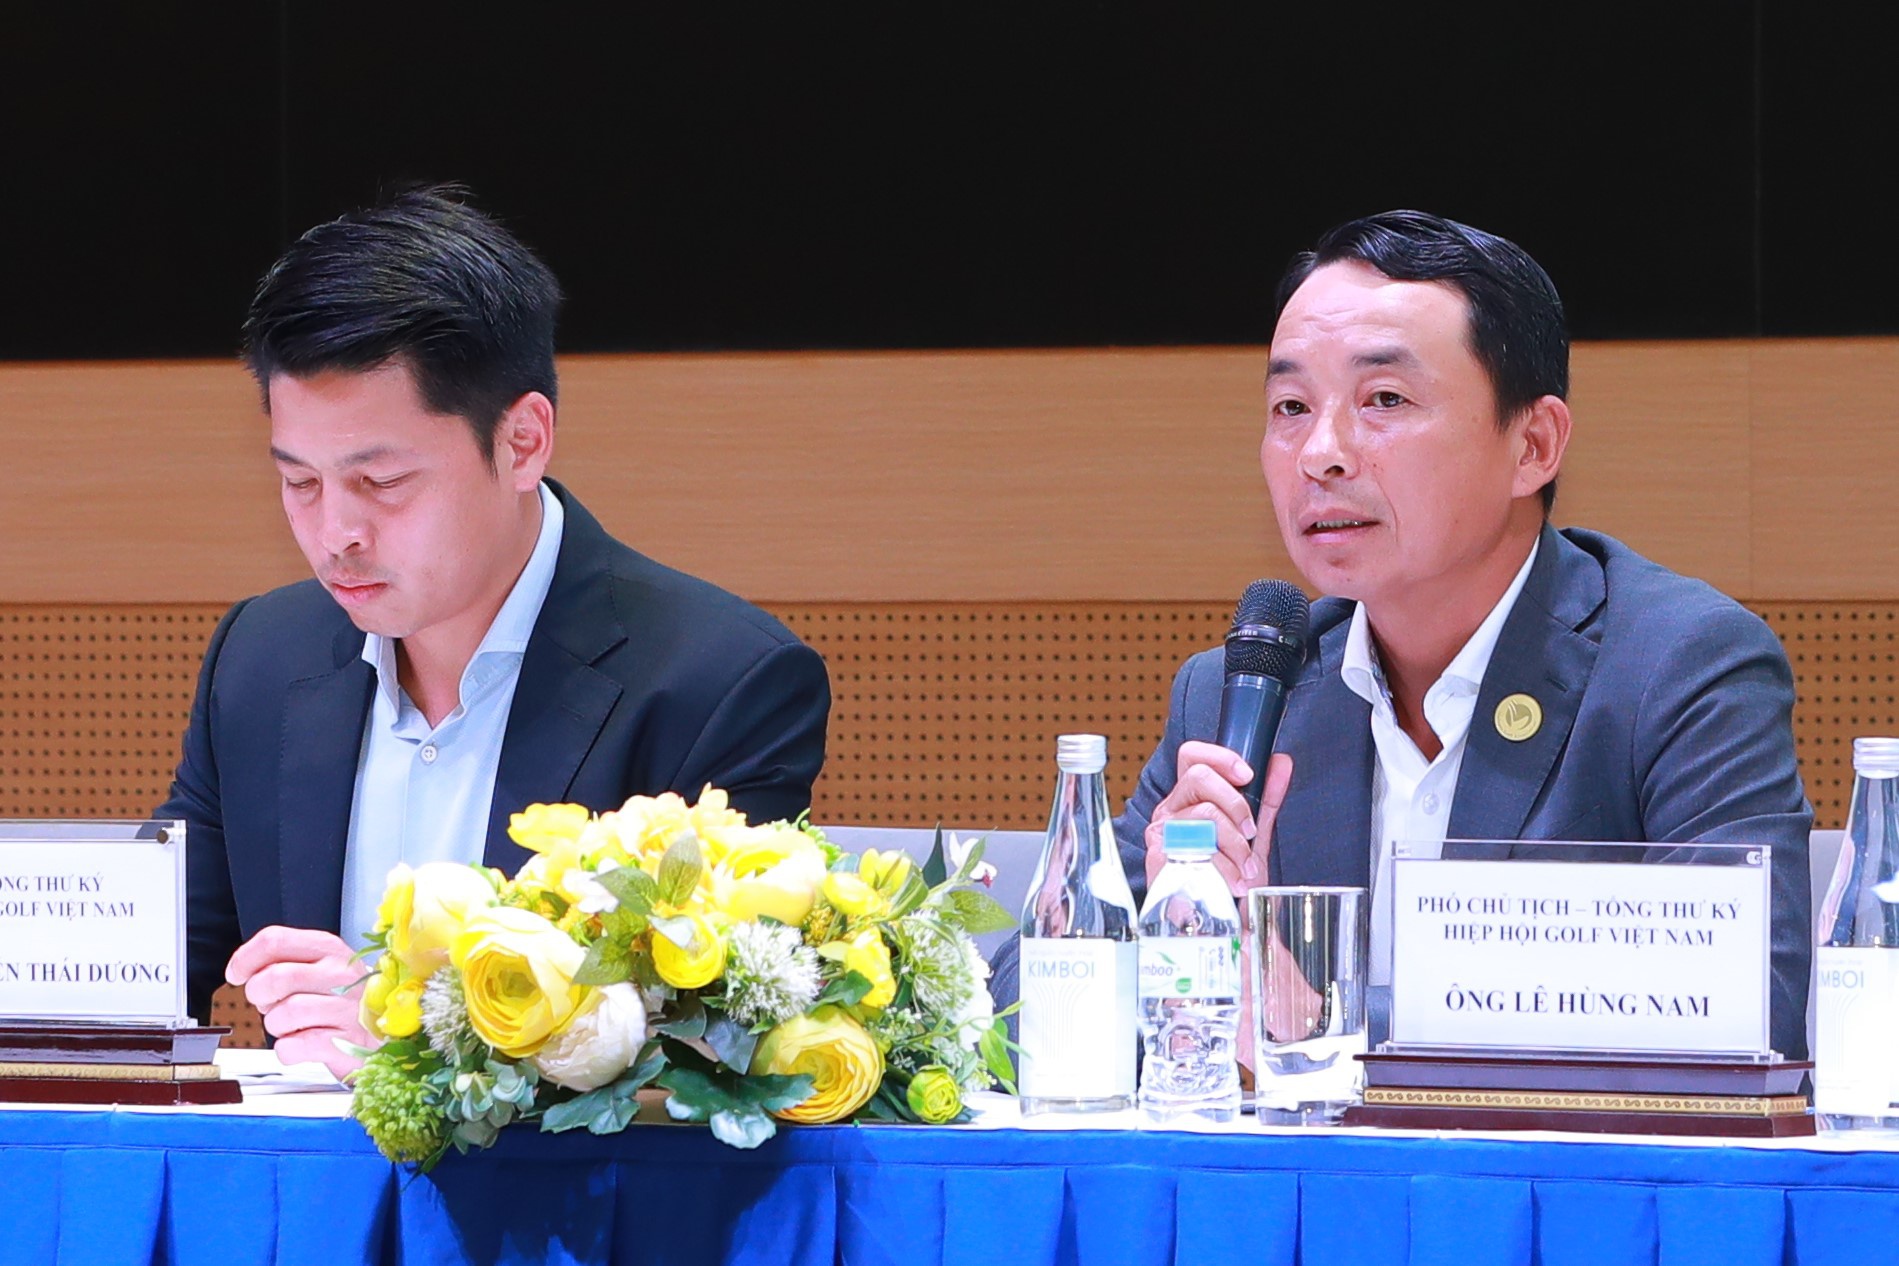 Ông Nguyễn Thái Dương, Phó Tổng Thư ký Hiệp hội Golf Việt Nam, Giám đốc giải đấu (trái)